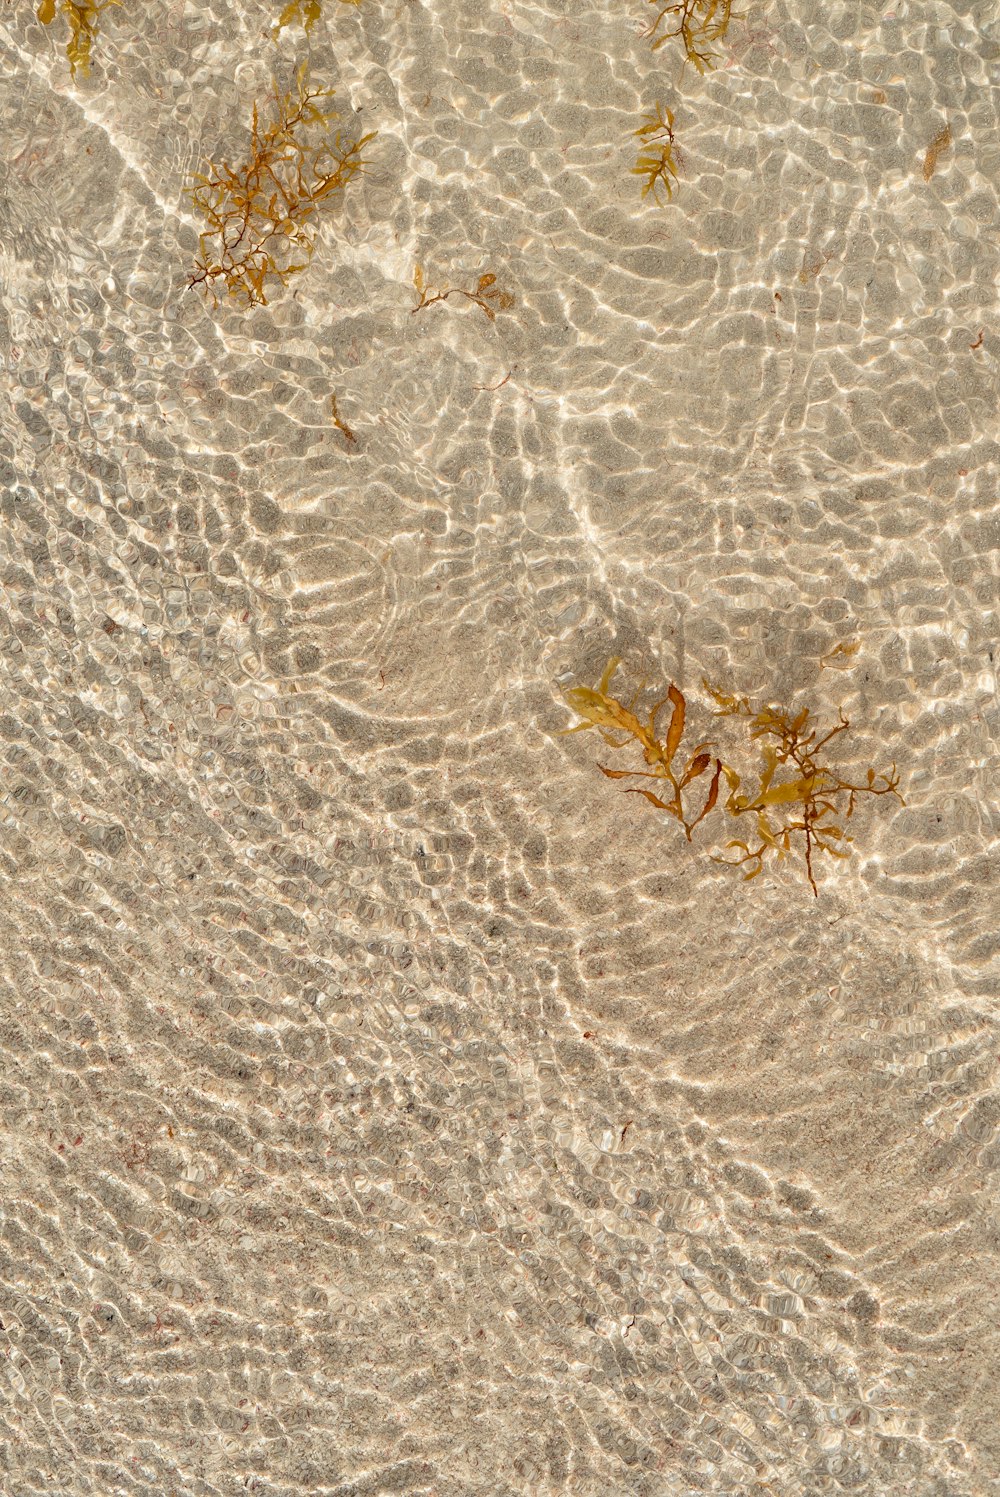 um grupo de algas marinhas flutuando no topo de uma praia de areia